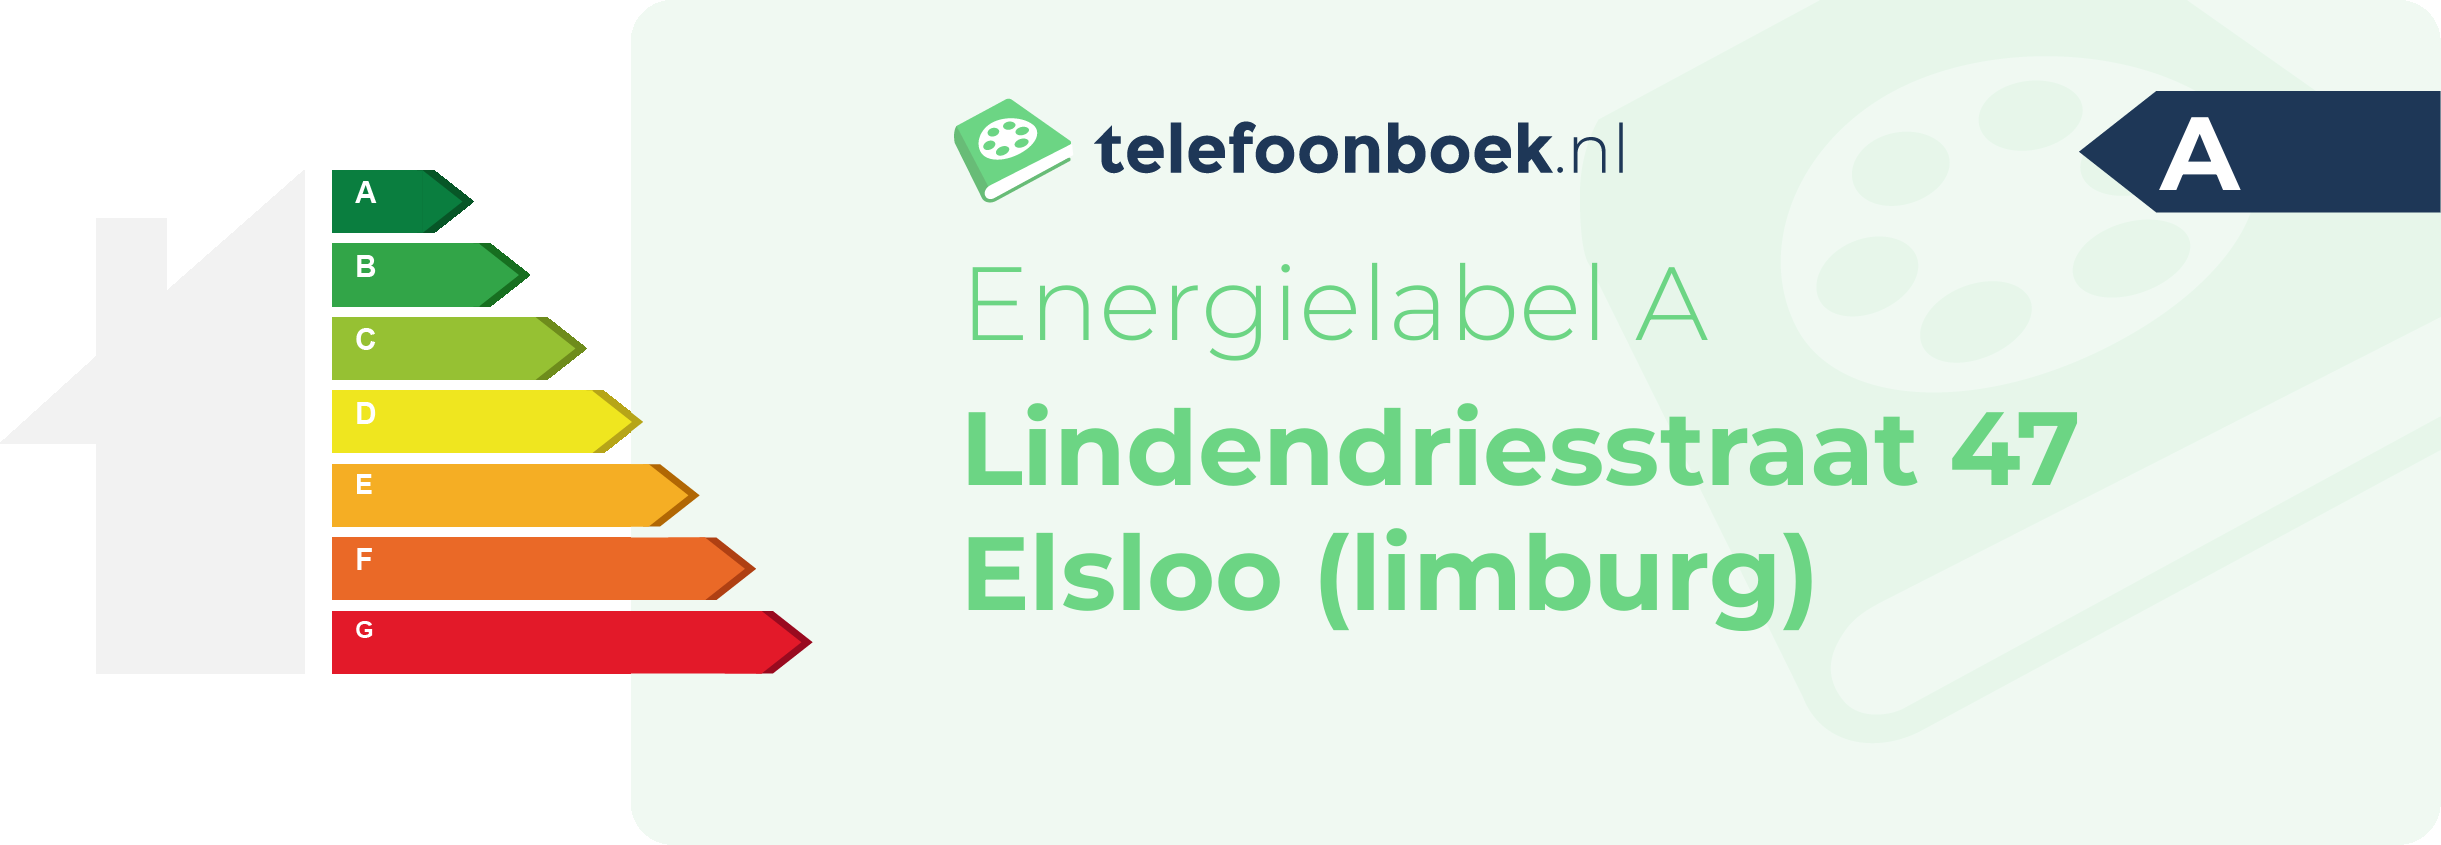 Energielabel Lindendriesstraat 47 Elsloo (Limburg)